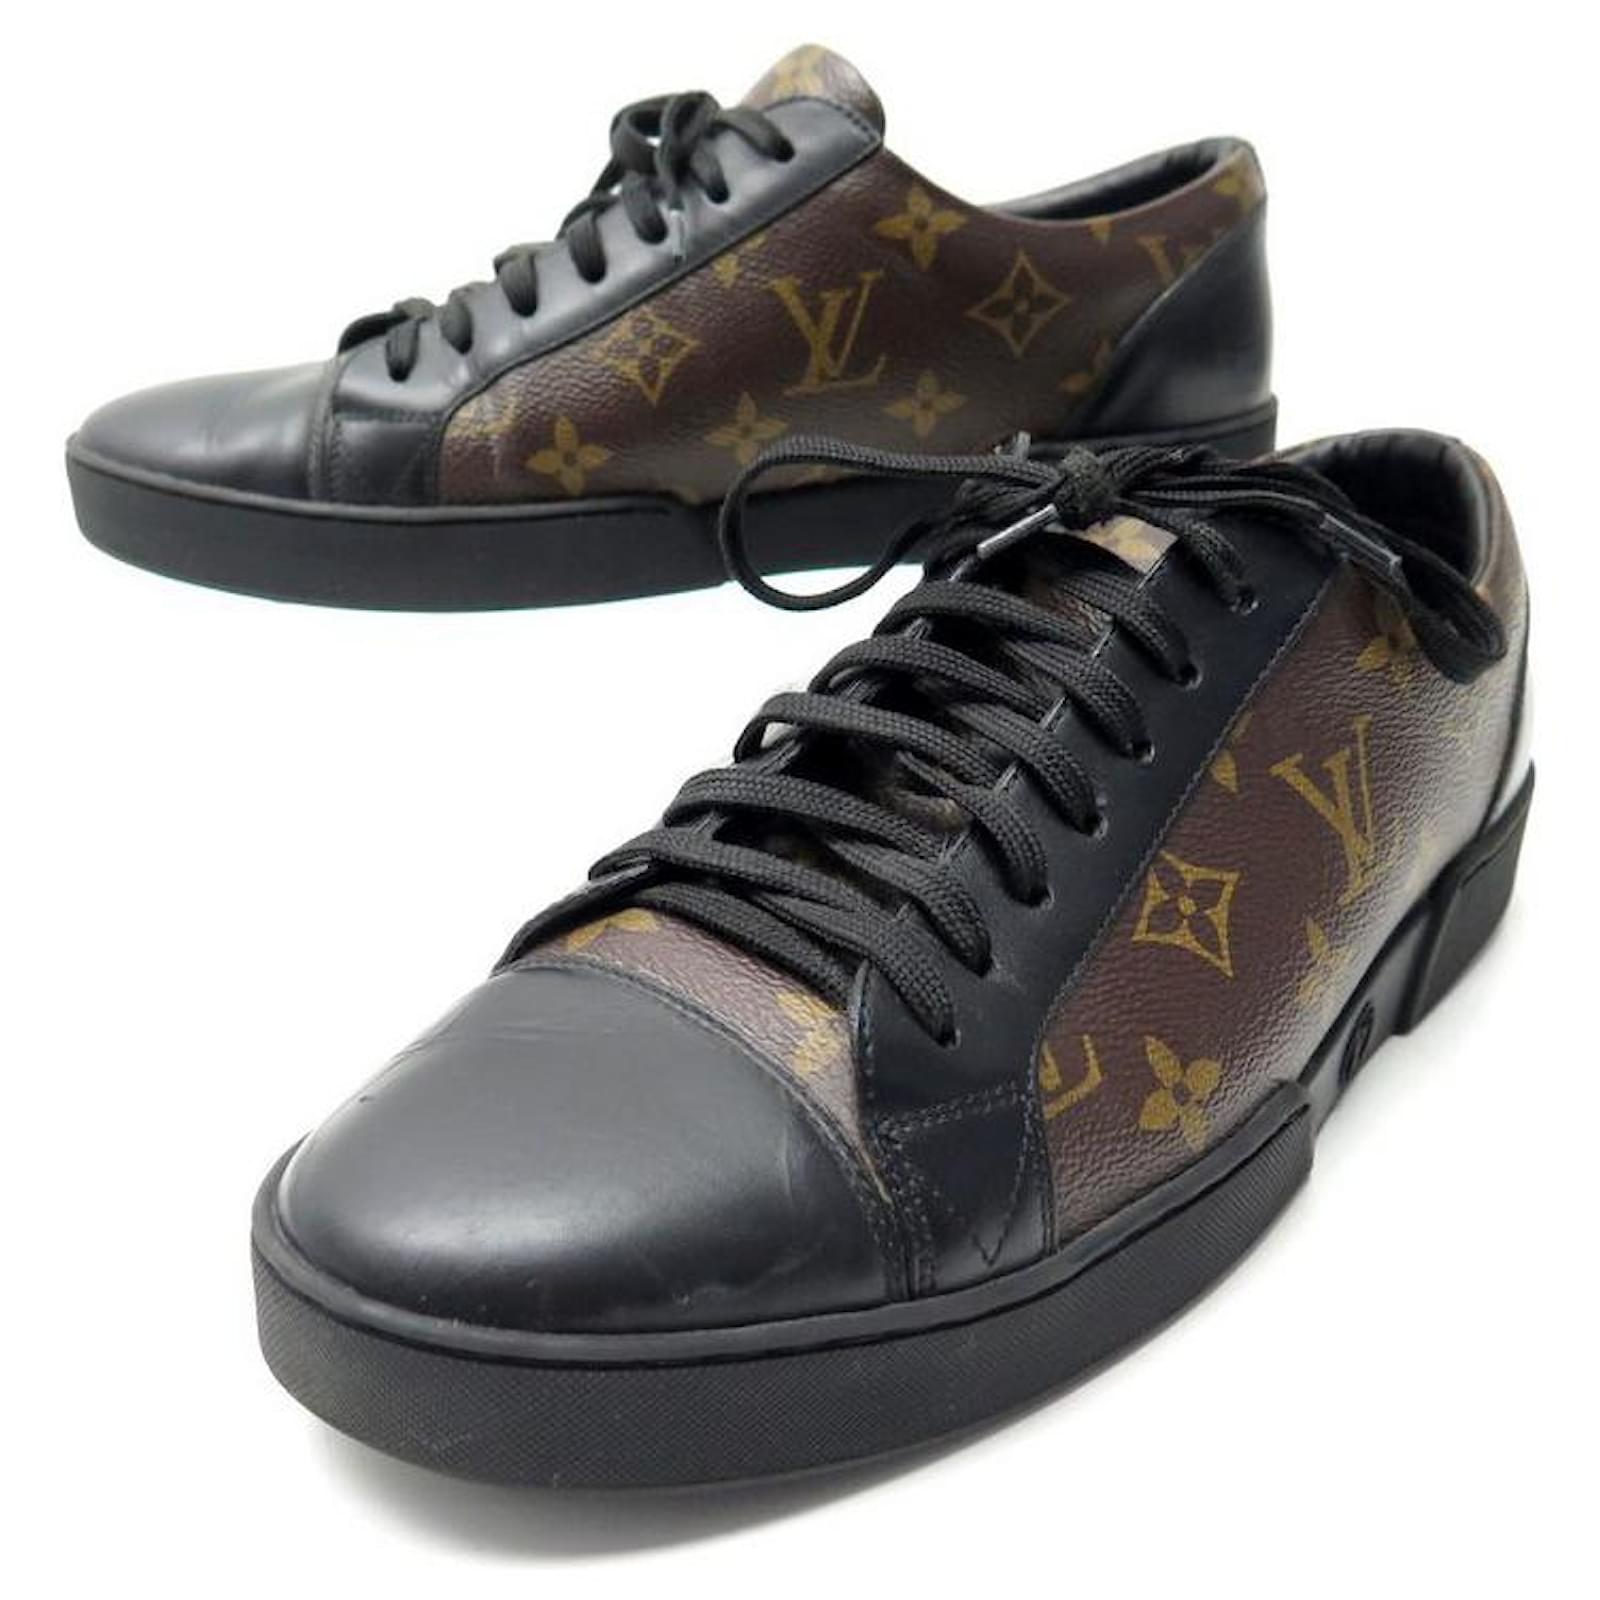 Sneakers Louis Vuitton: la scarpiera Monogram per i modelli da collezione